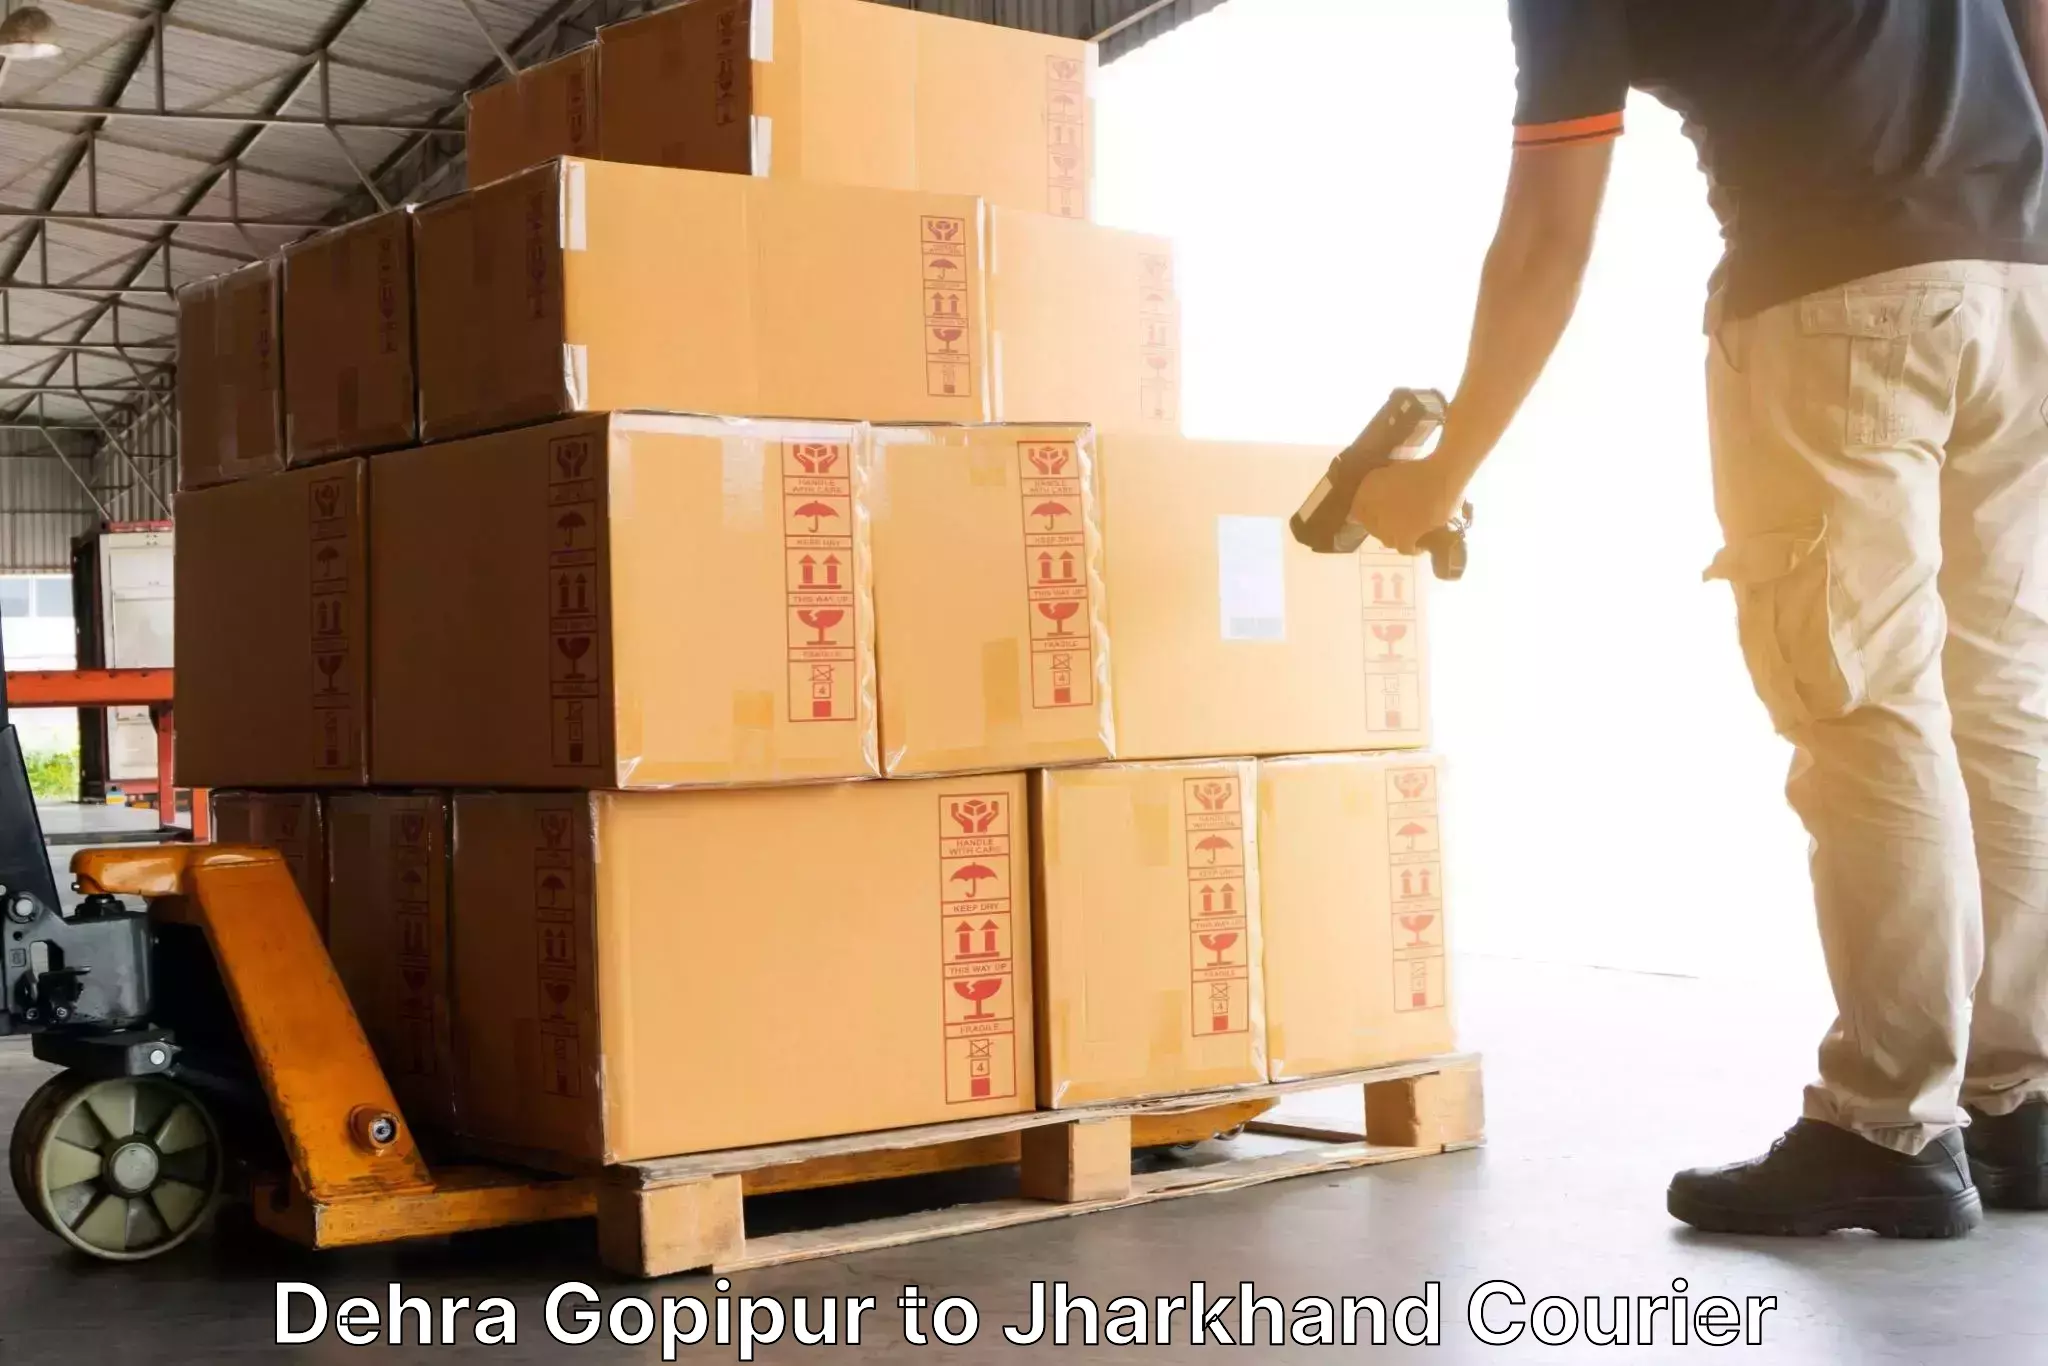 Customer-oriented courier services Dehra Gopipur to Ranka Garhwa